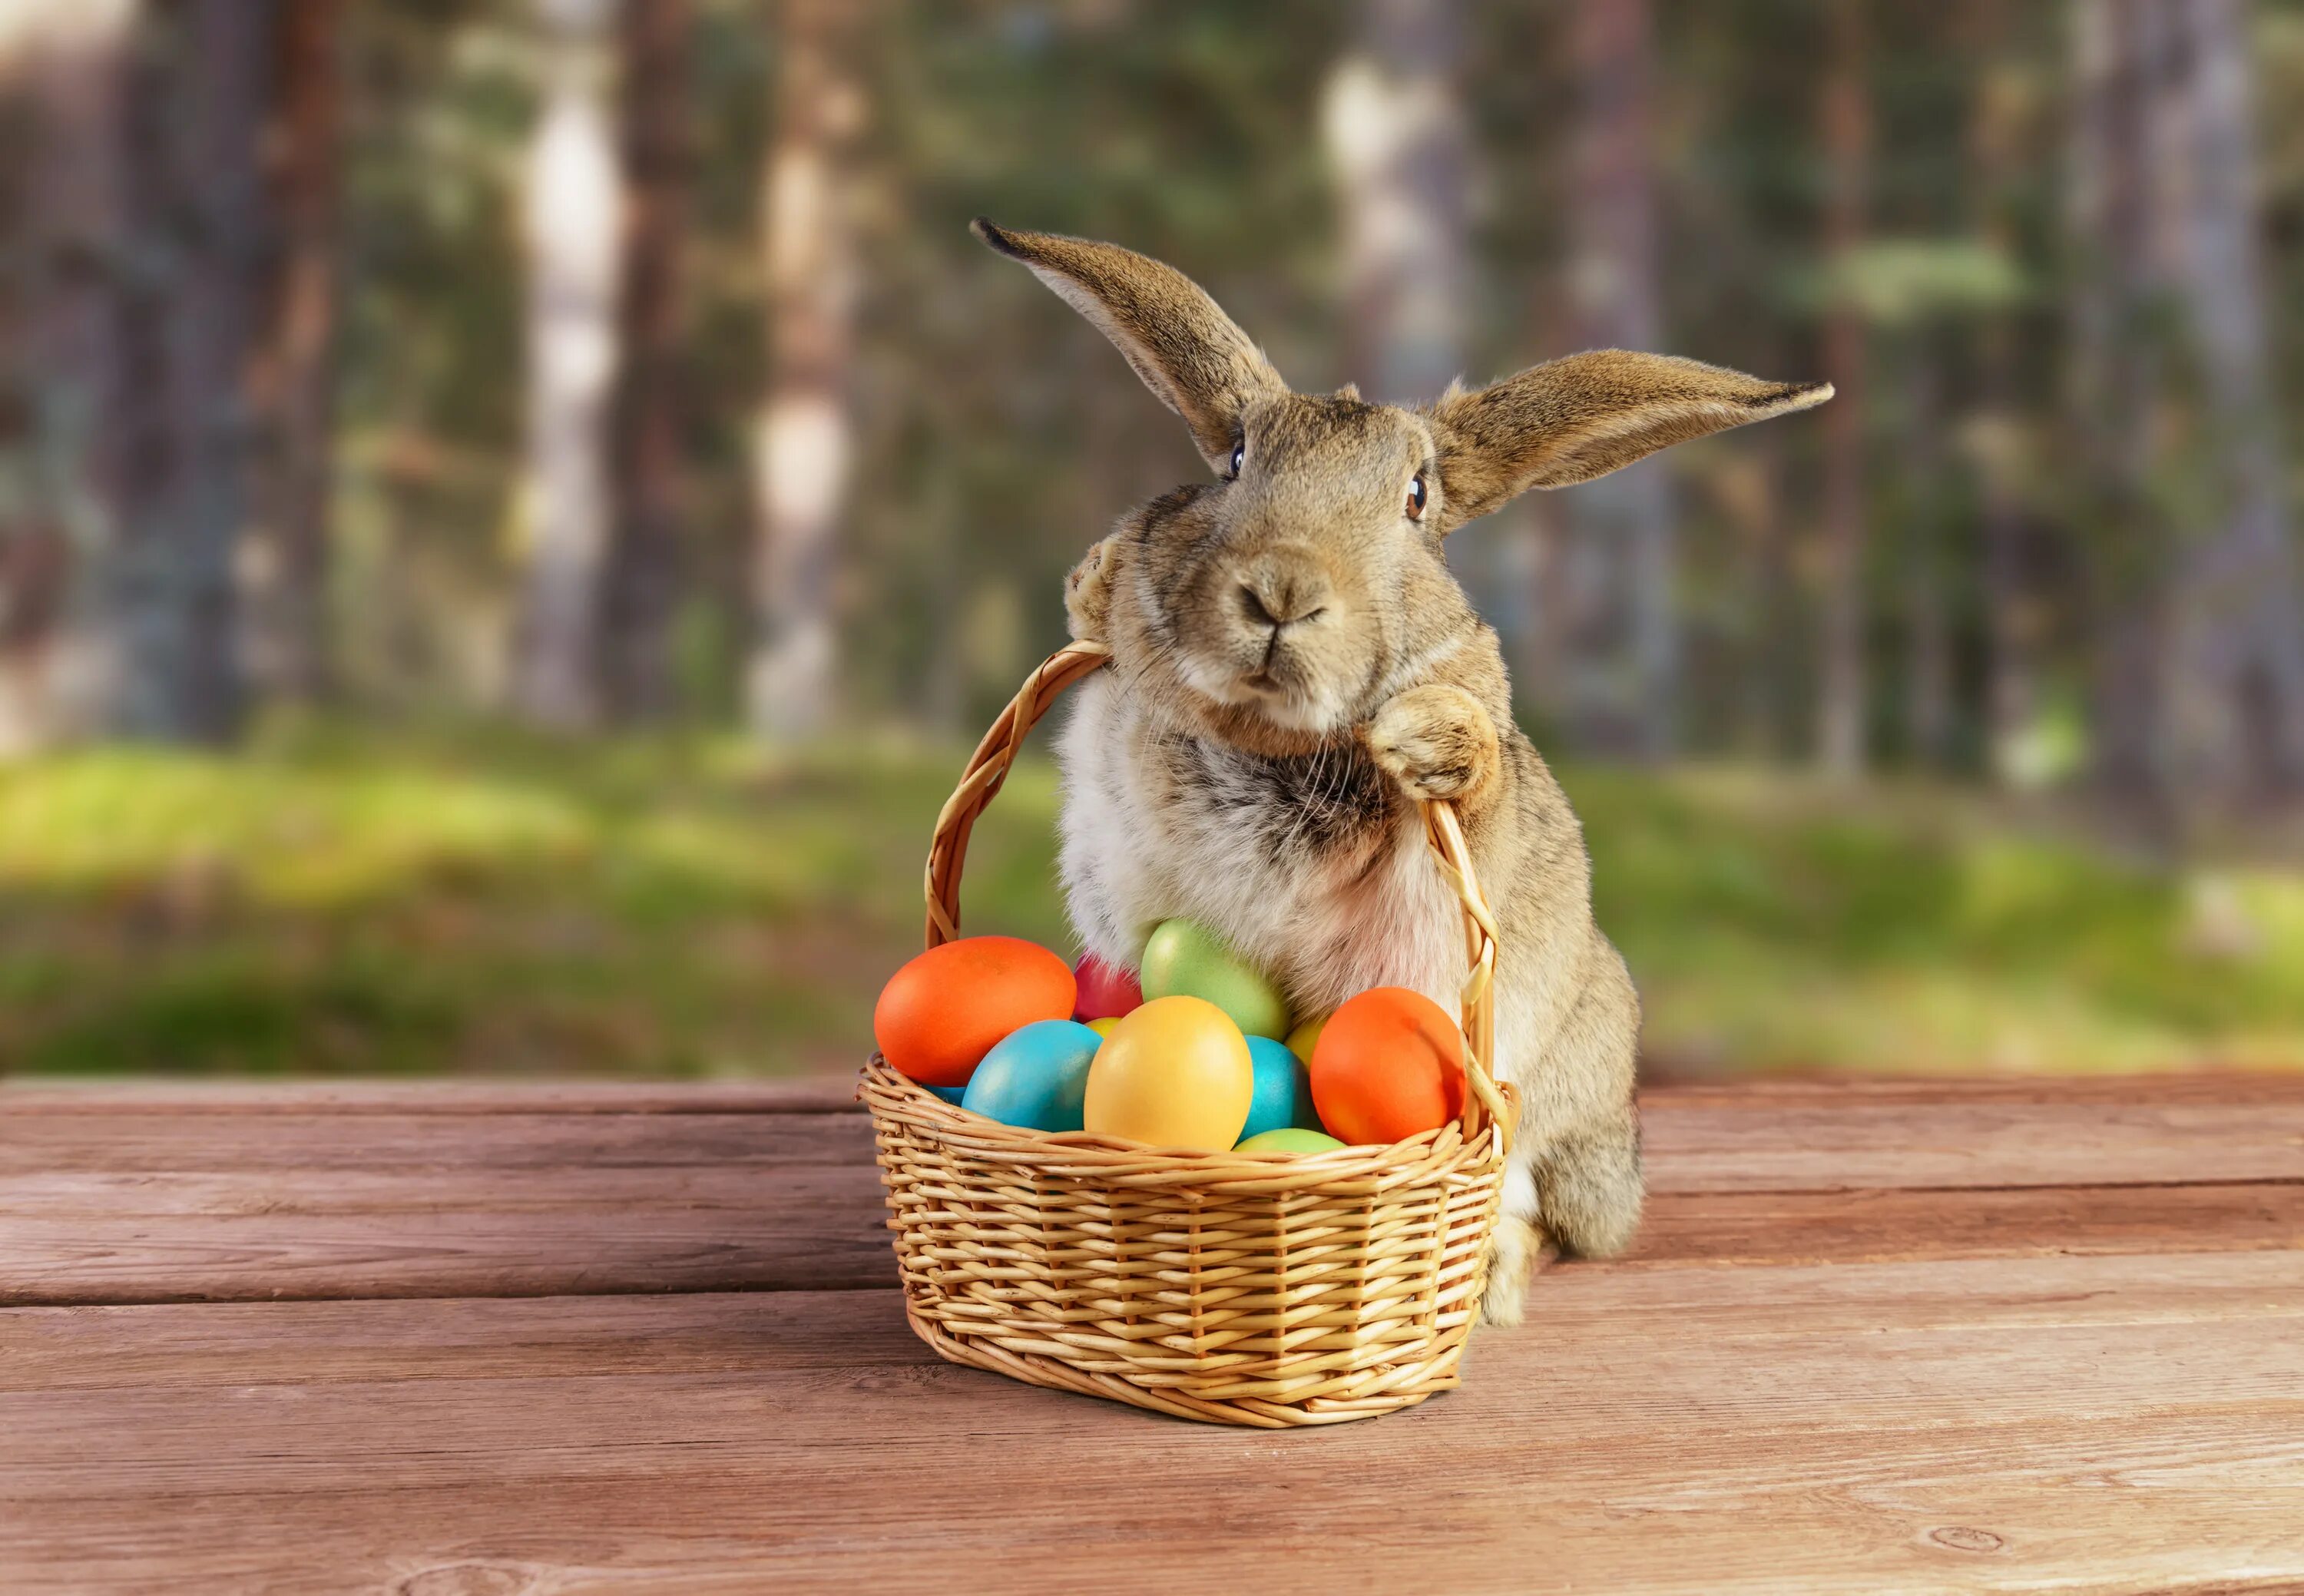 Заяц символ пасхи. Кролик Bunny Пасхальный заяц. Easter Bunny — Пасхальный кролик. Пасхальный заяц (Osterhase). Пасхальный кролик с яйцами.